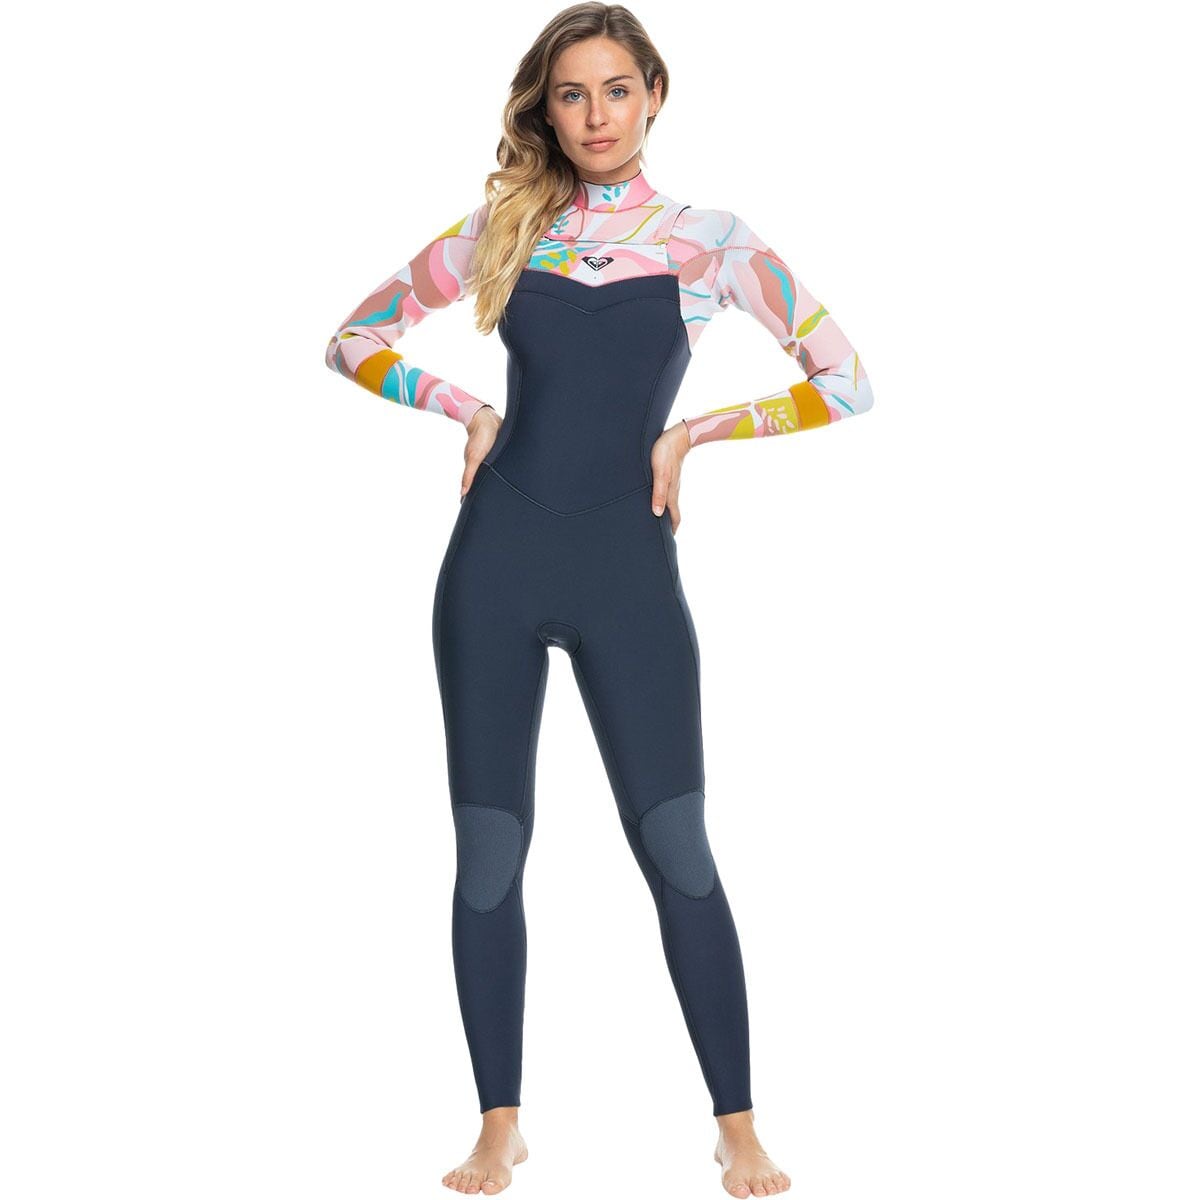 Roxy Syncro 3/2 Back-Zip GBS Wetsuit - Women's